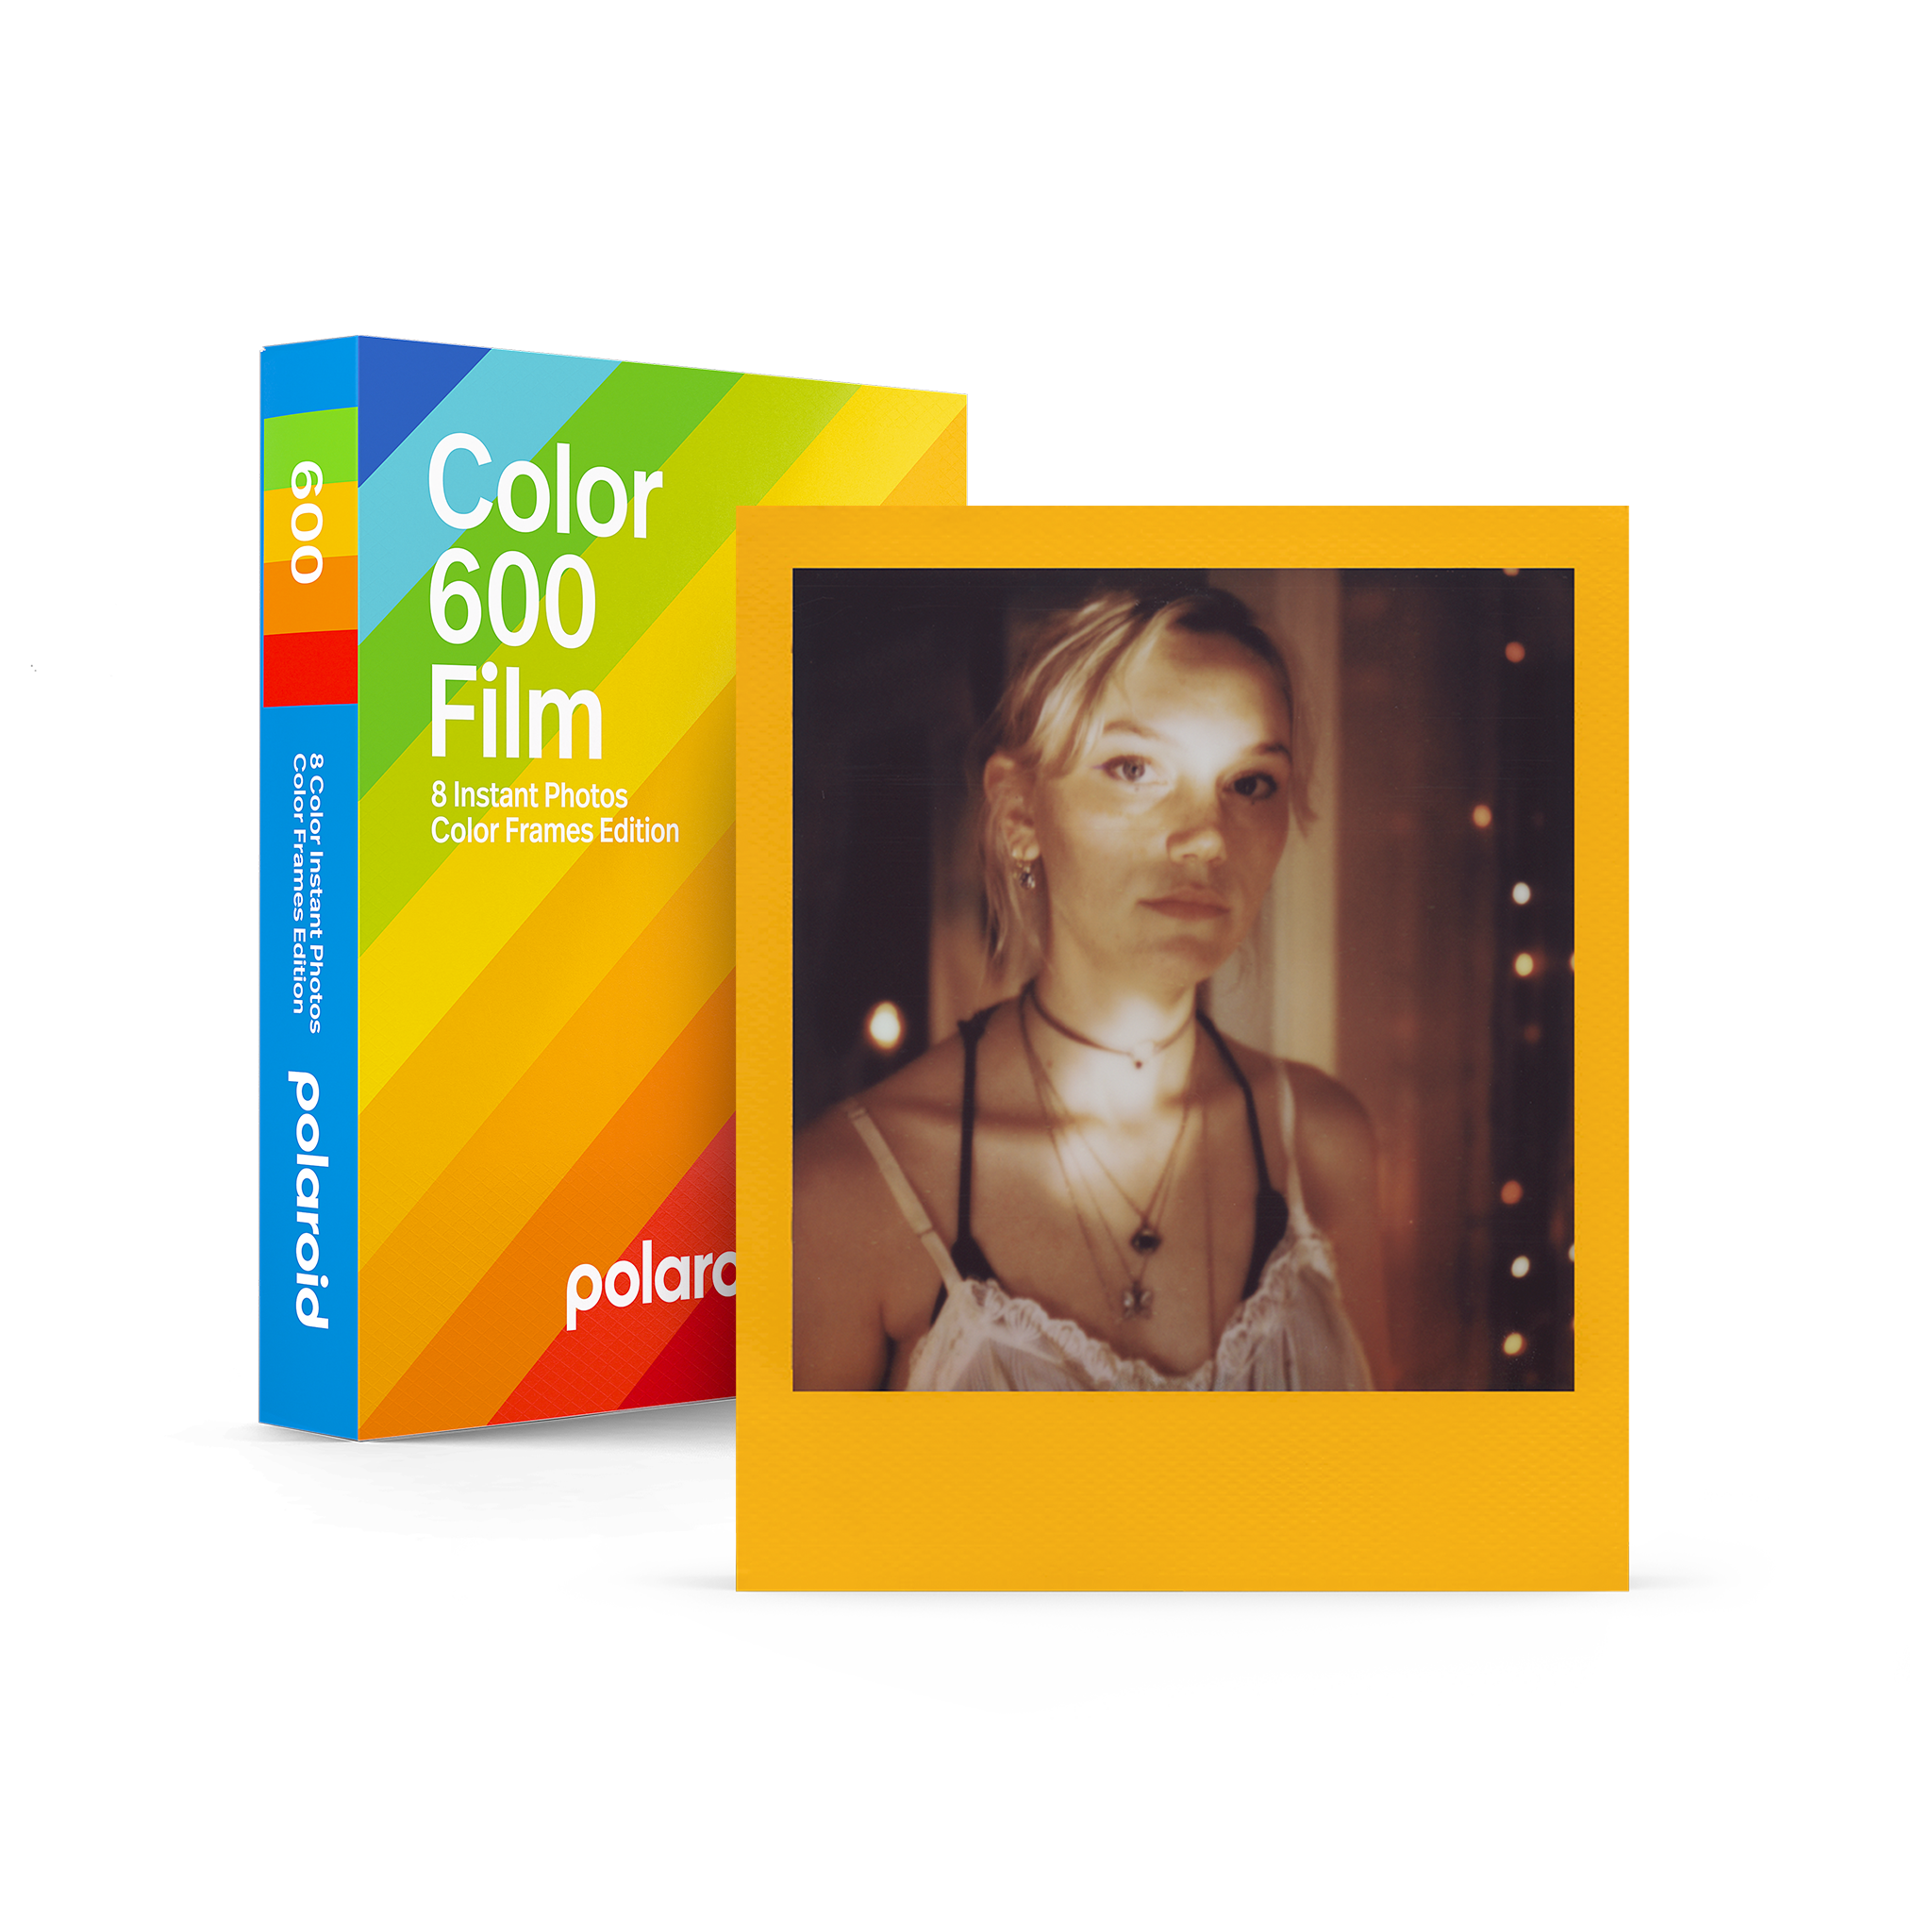 Film Polaroid® 600